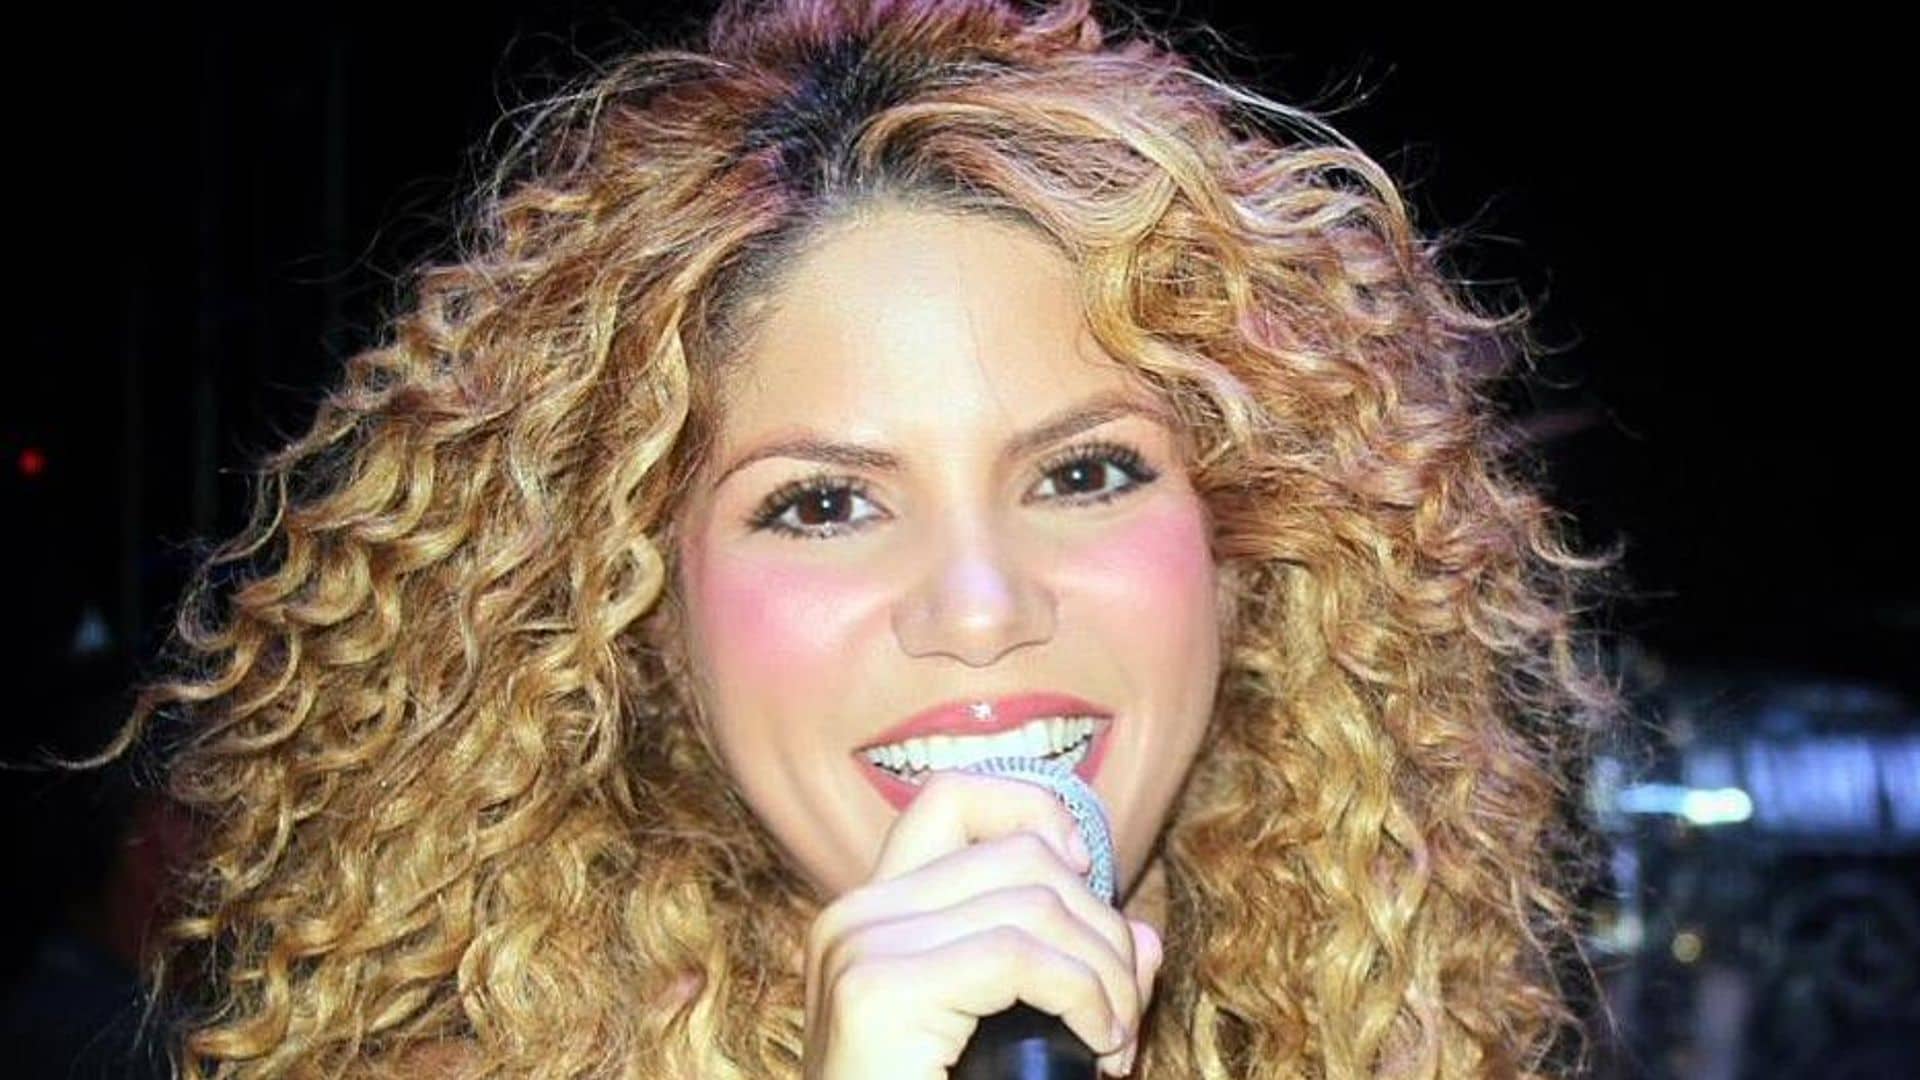 Shakibecca is Shakira's doppelganger